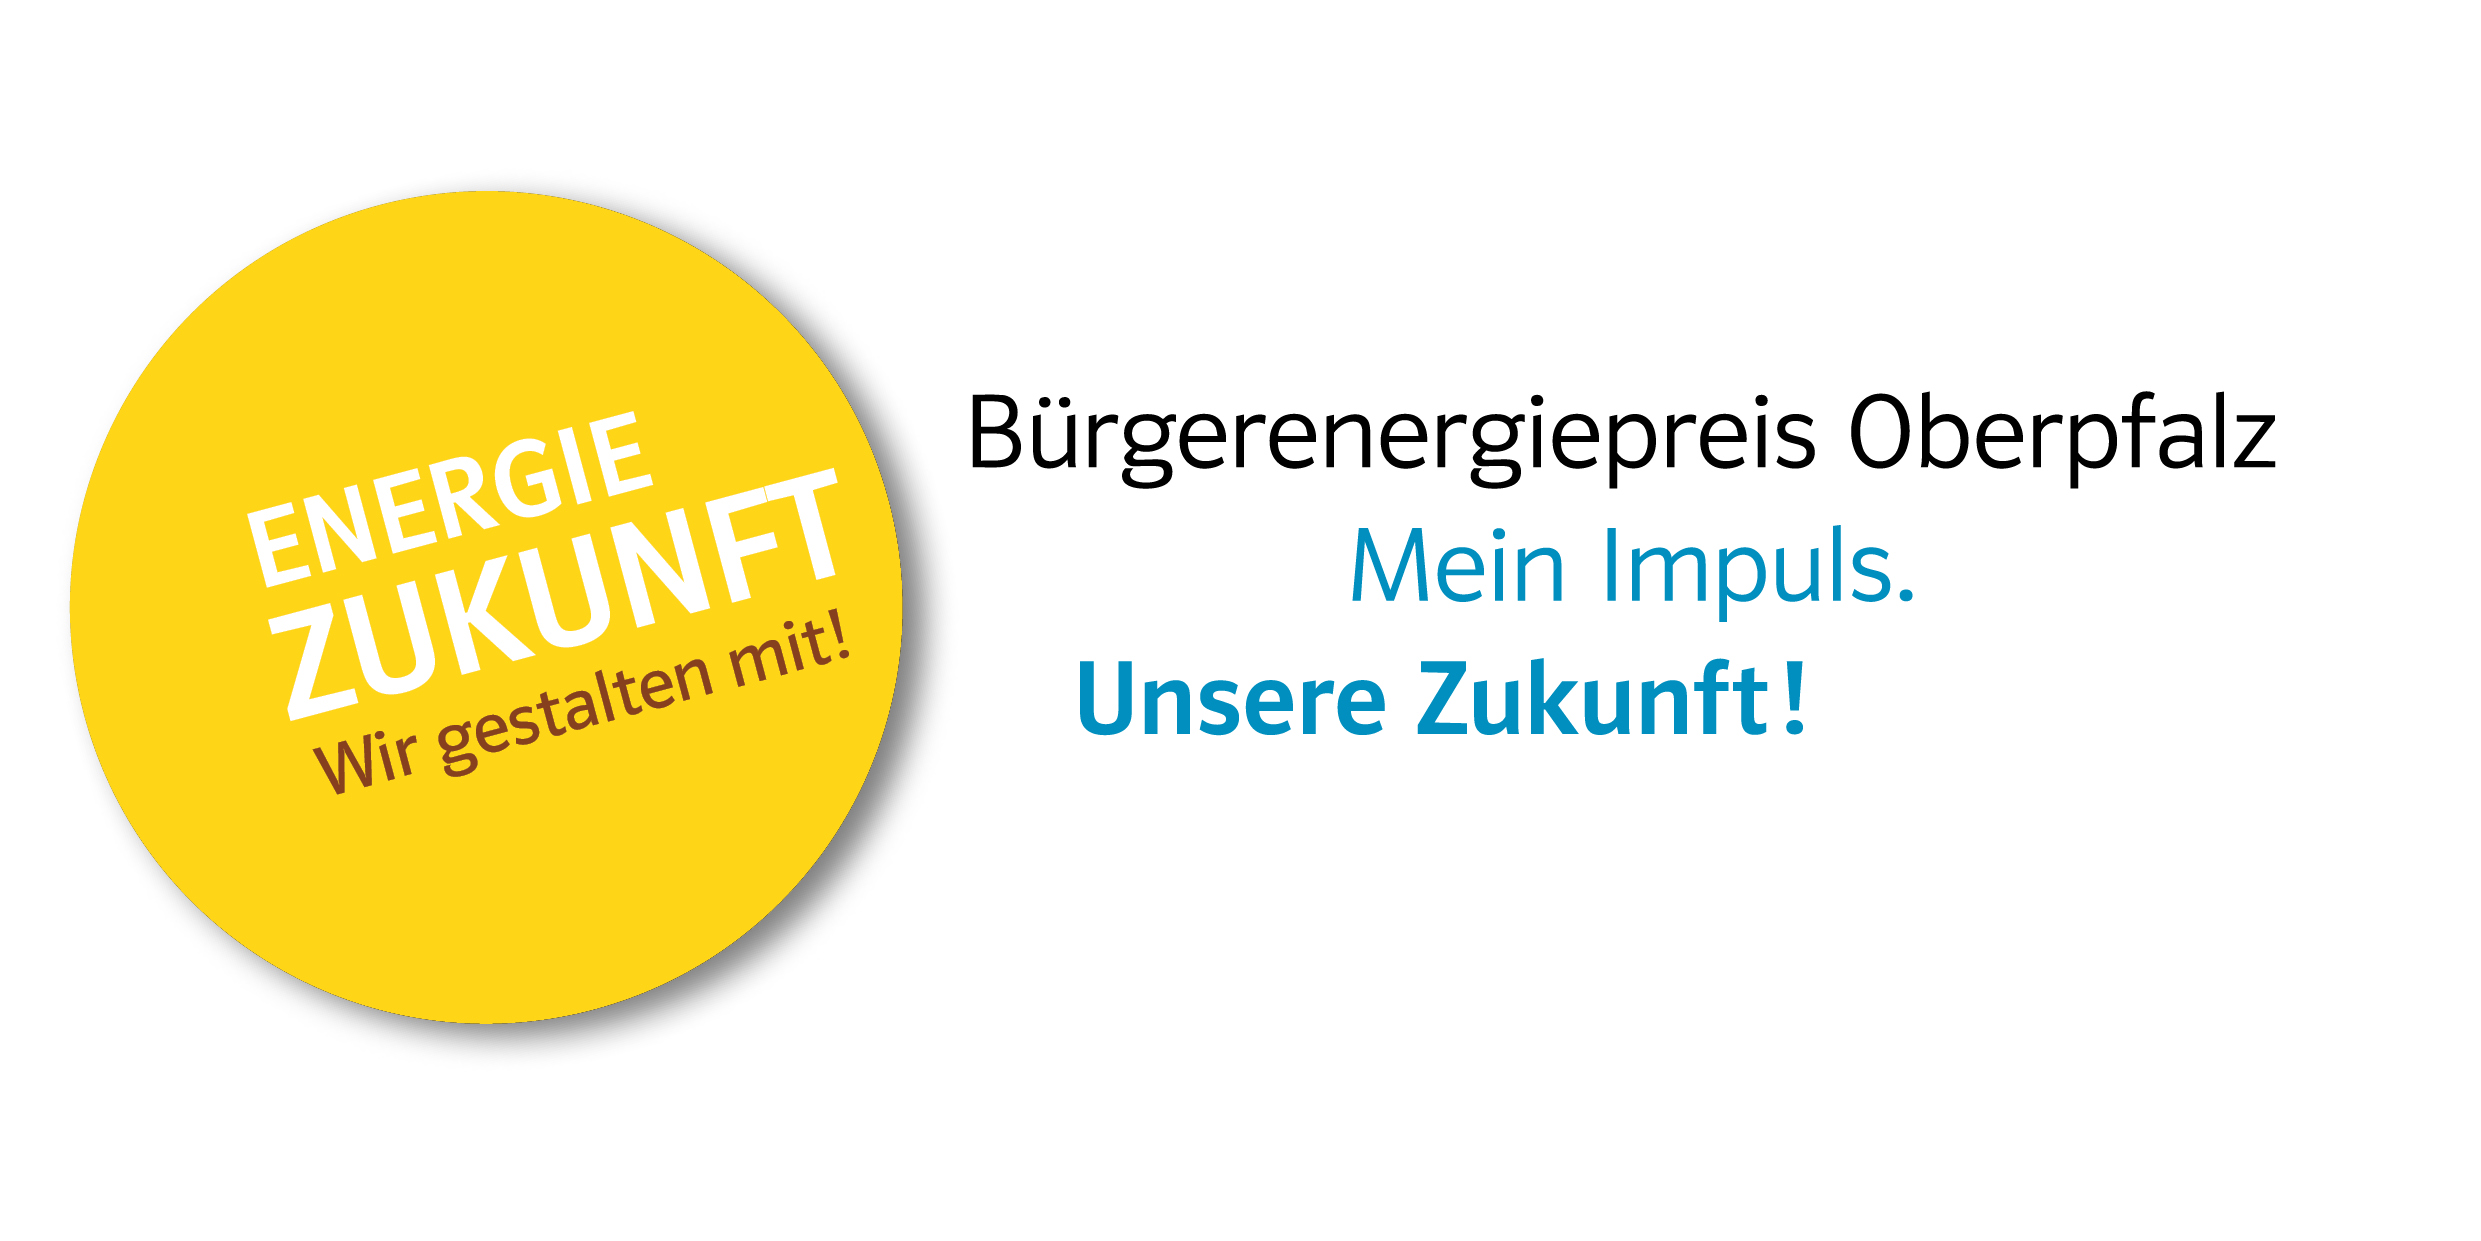 Bürgerenergiepreis Oberpfalz – Mein Impuls. Unsere Zukunft!